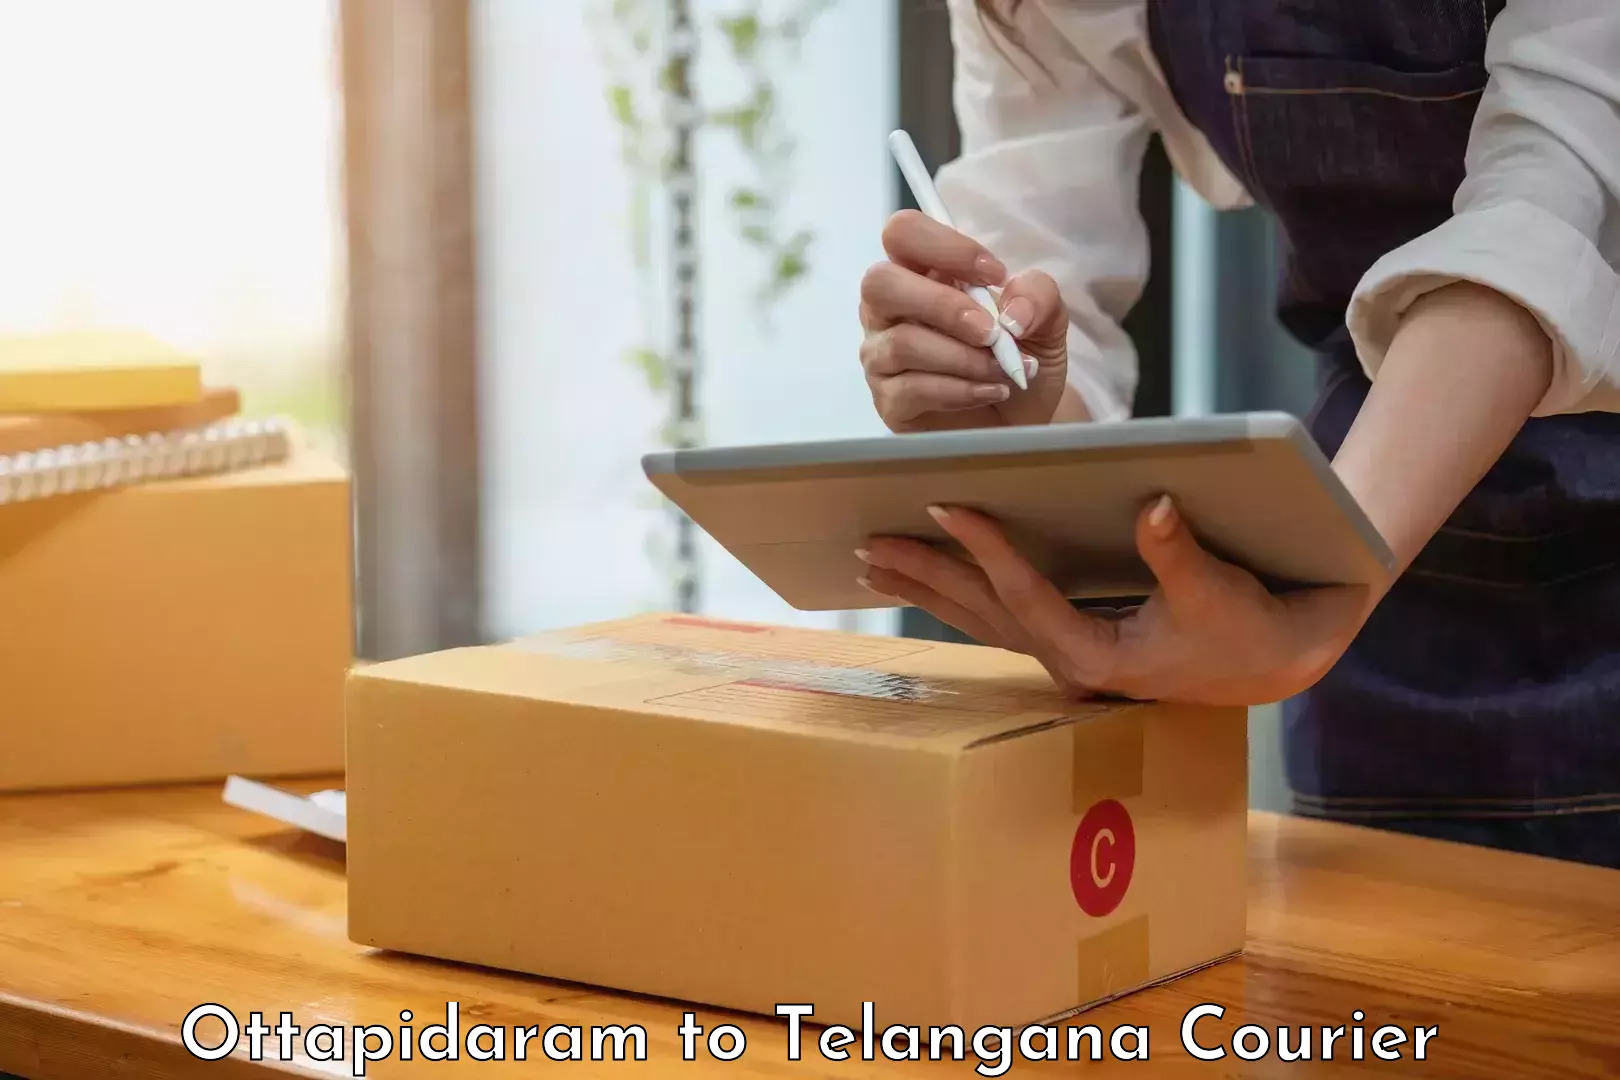 Nationwide courier service Ottapidaram to Nalgonda